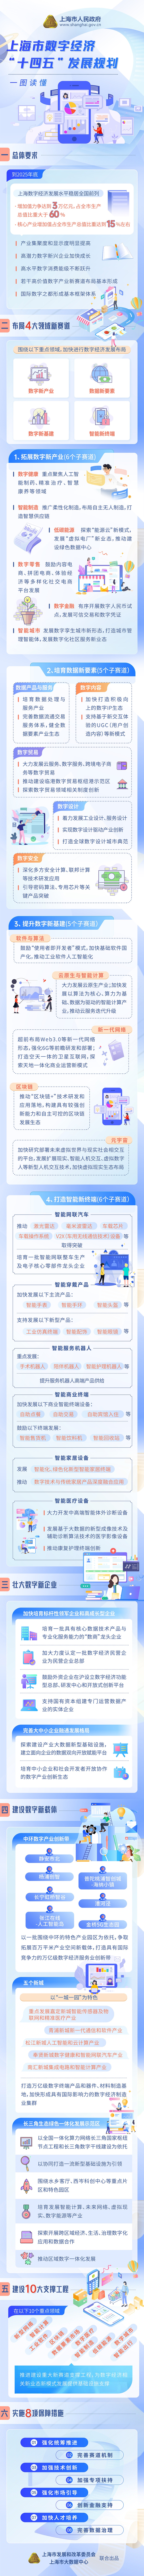 一图读懂《上海市数字经济“十四五”发展规划》.jpg